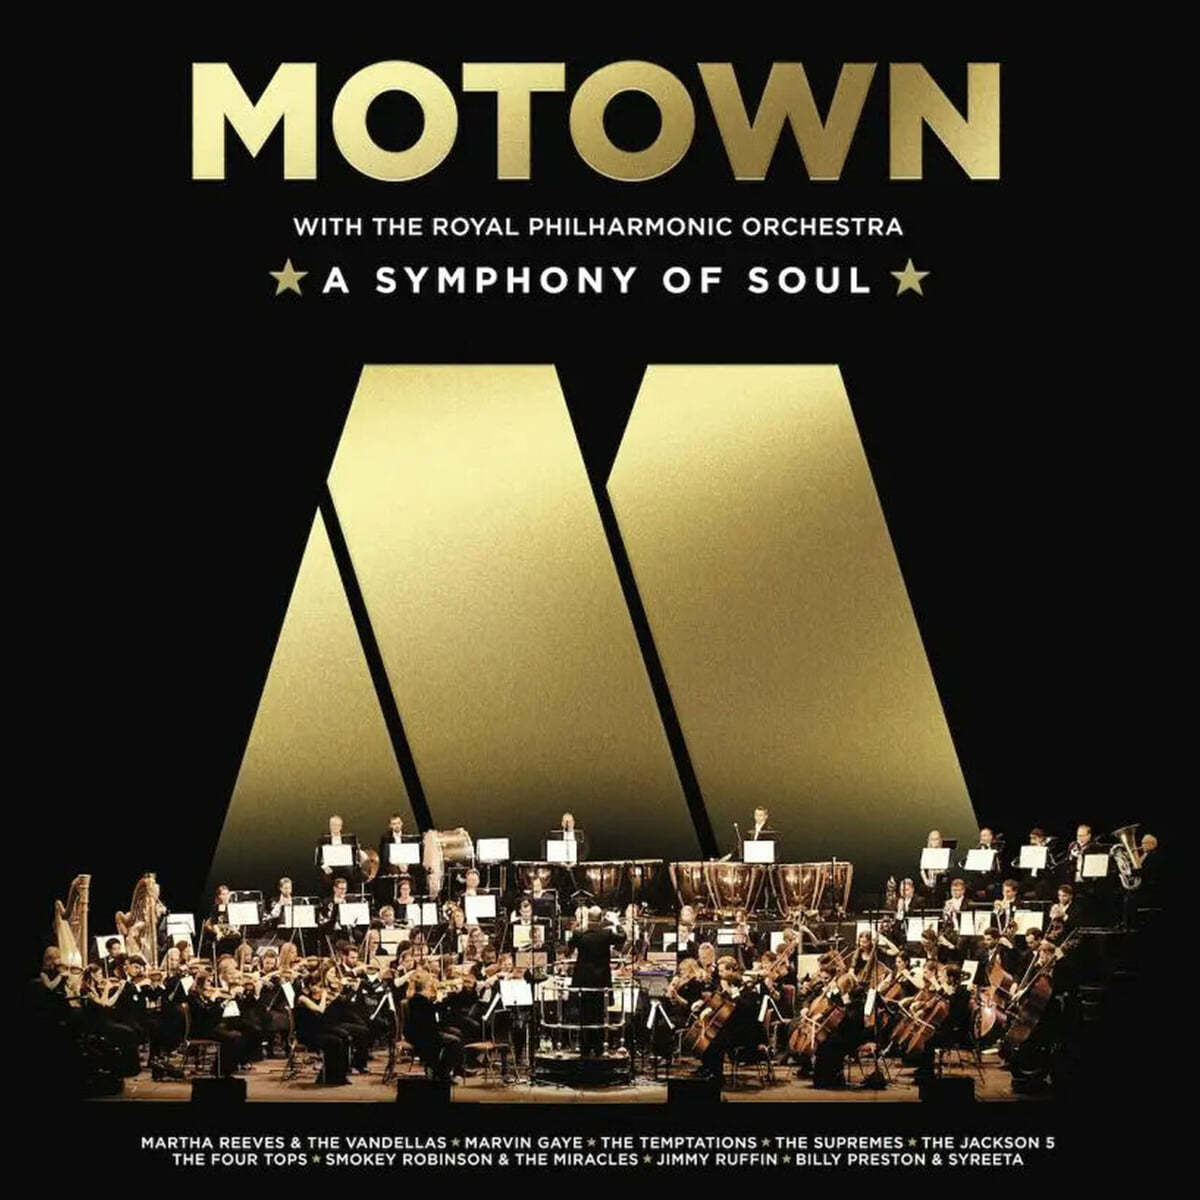 모타운 레이블 - 로얄 필하모닉 오케스트라와 함께하는 팝 컴필레이션 (Motown With The Royal Philharmonic Orchestra: A Symphony Of Soul) [LP] 